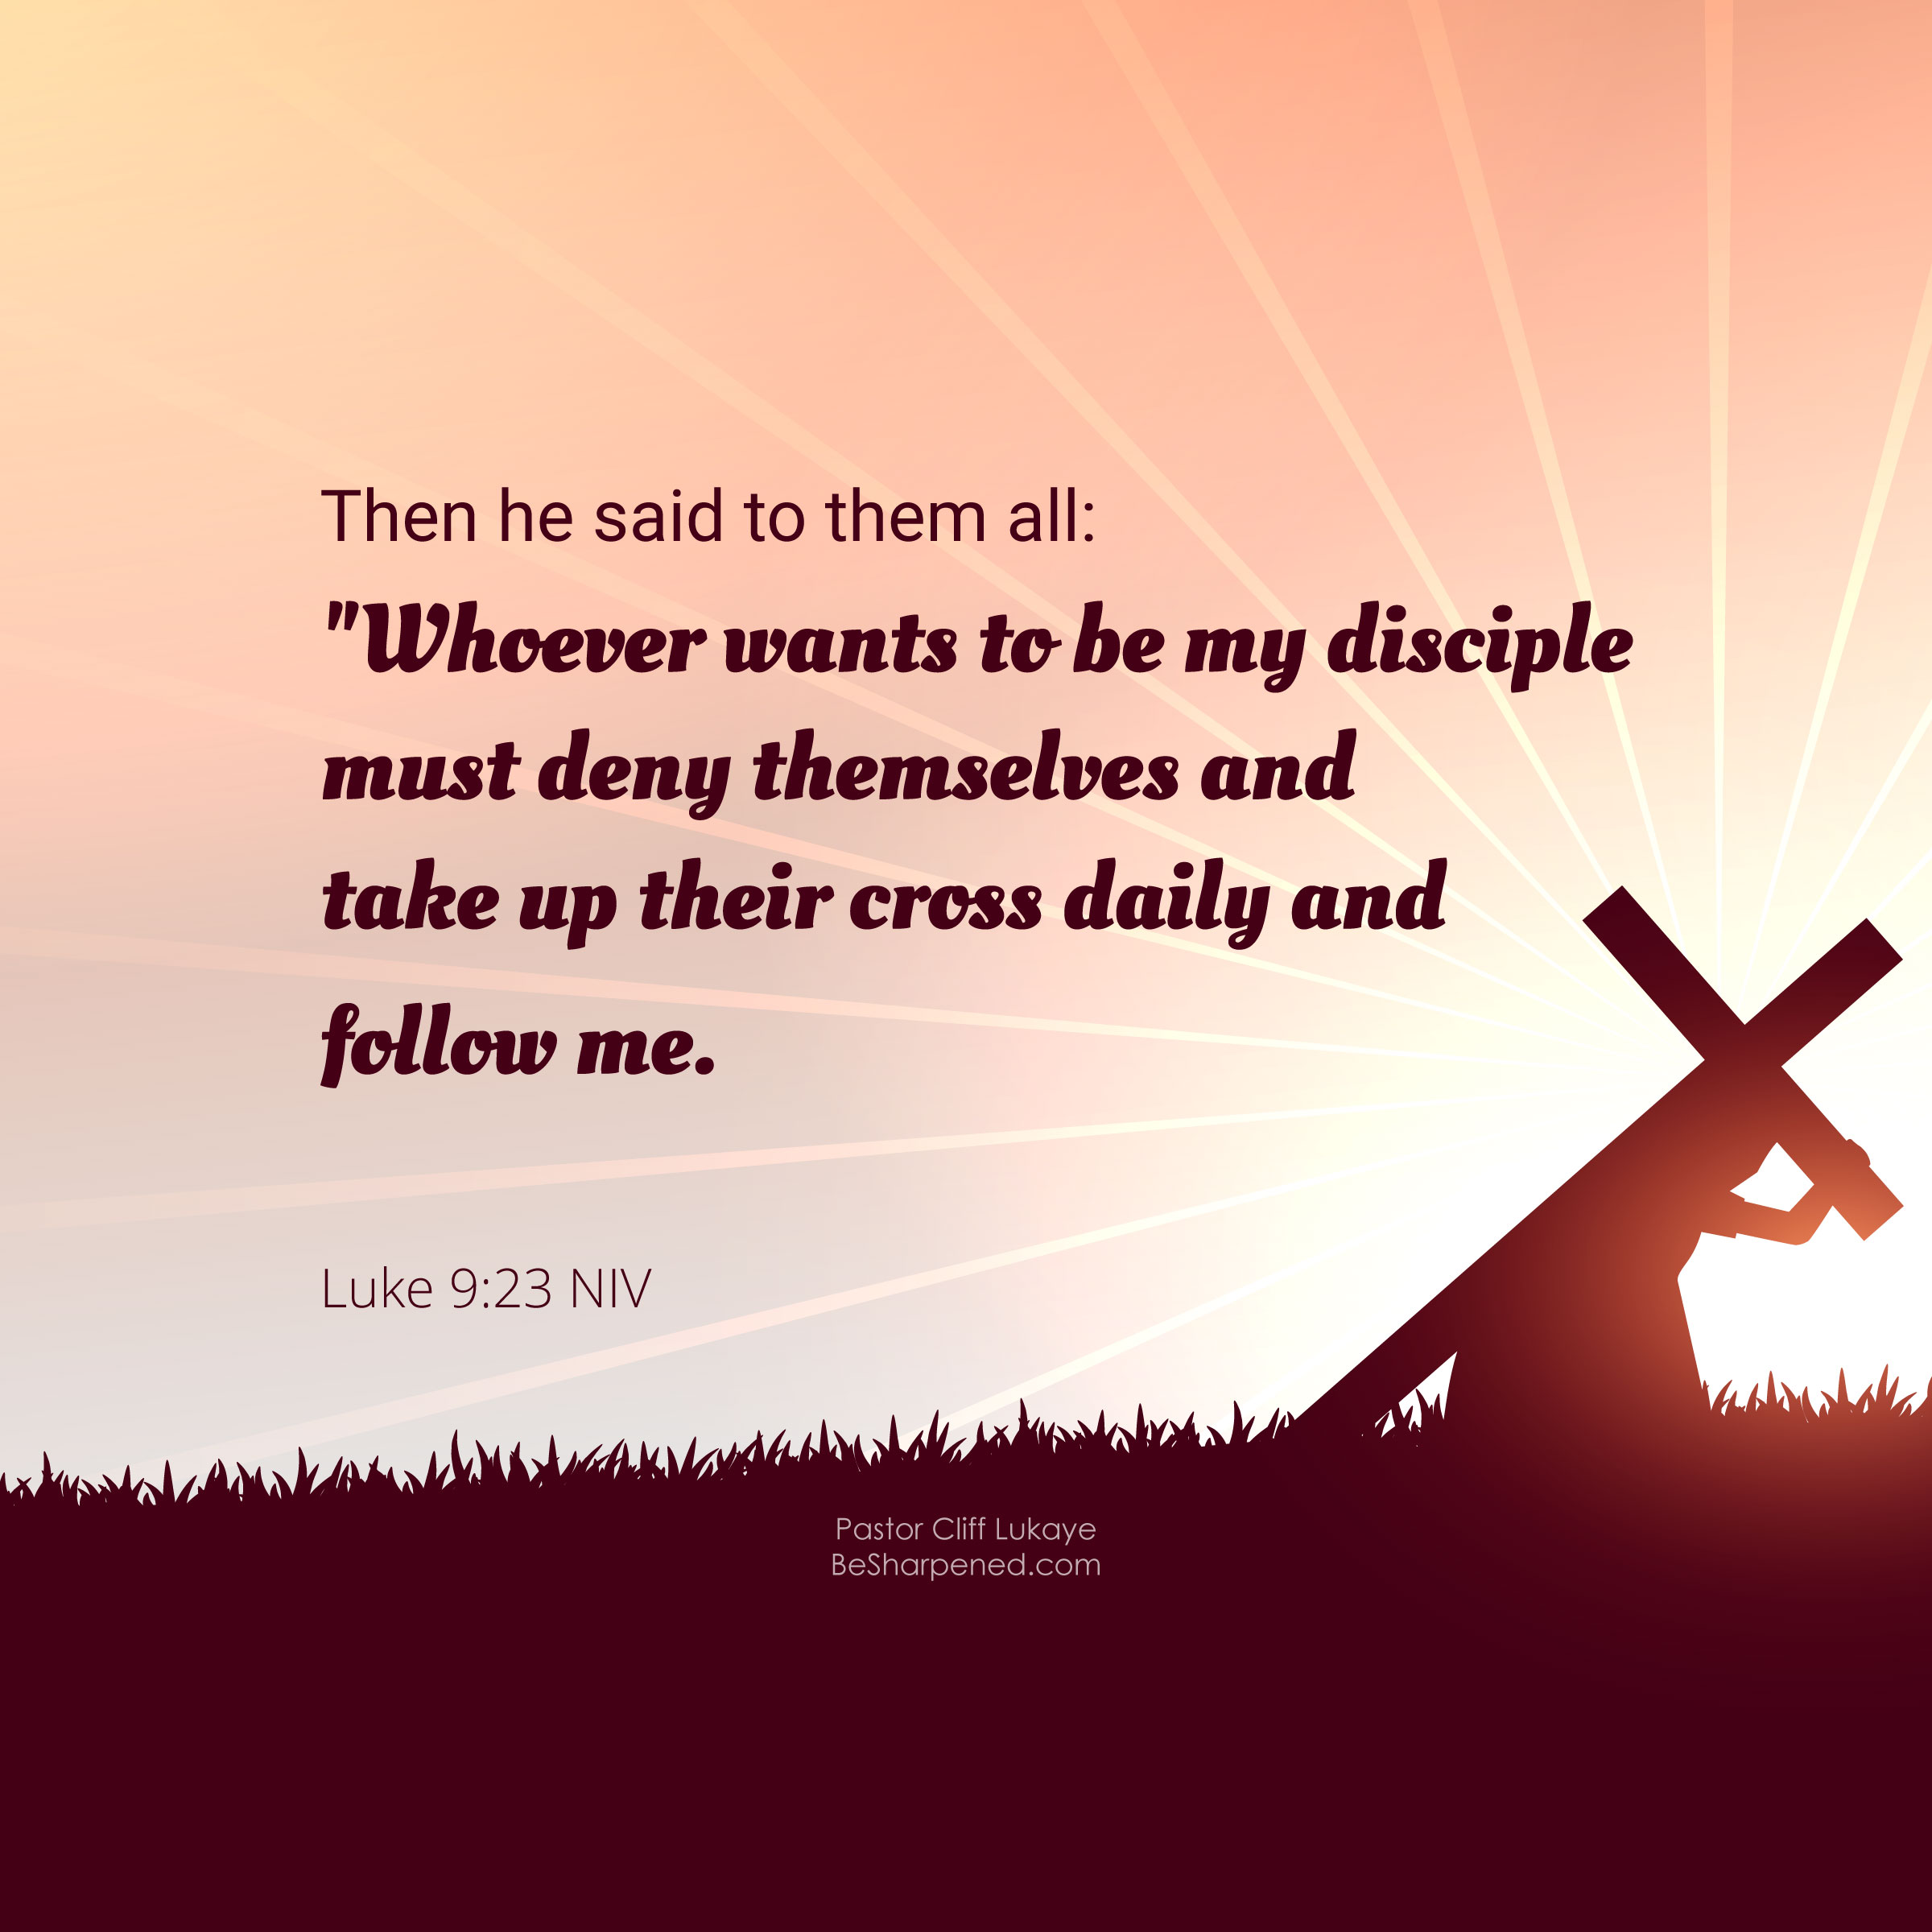 Luke 9:23